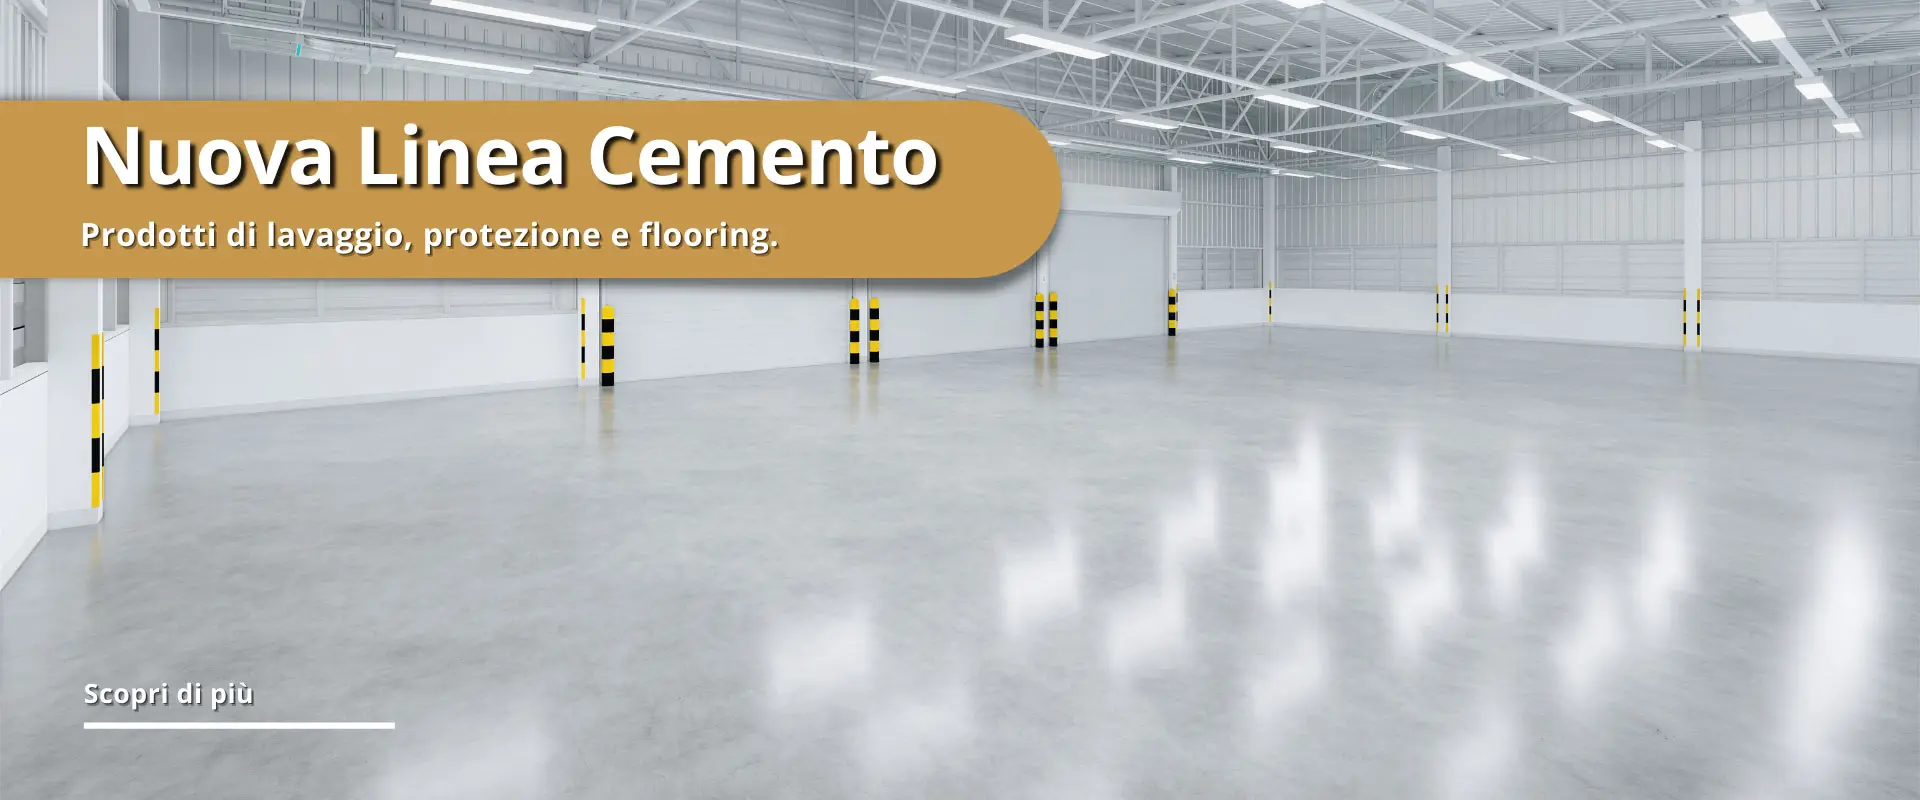 Nuova linea cemento, lavaggio protezione e flooring